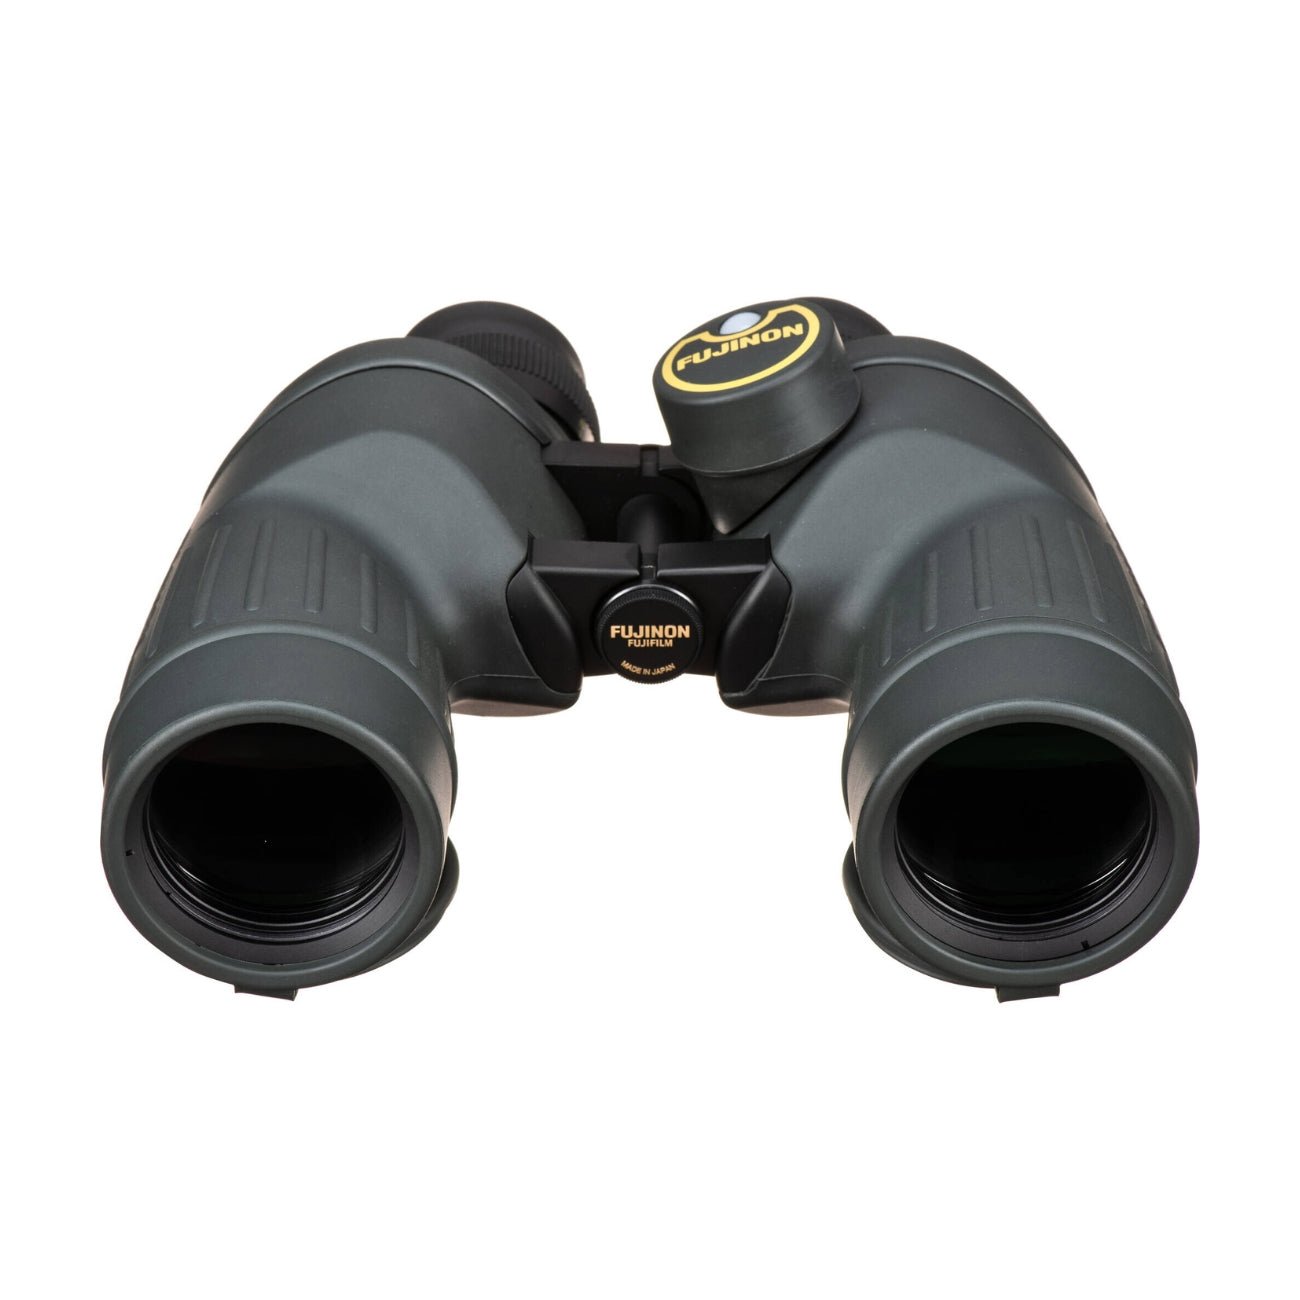 Fujinon 7x50 FMTRC-SX Polaris Binoculars